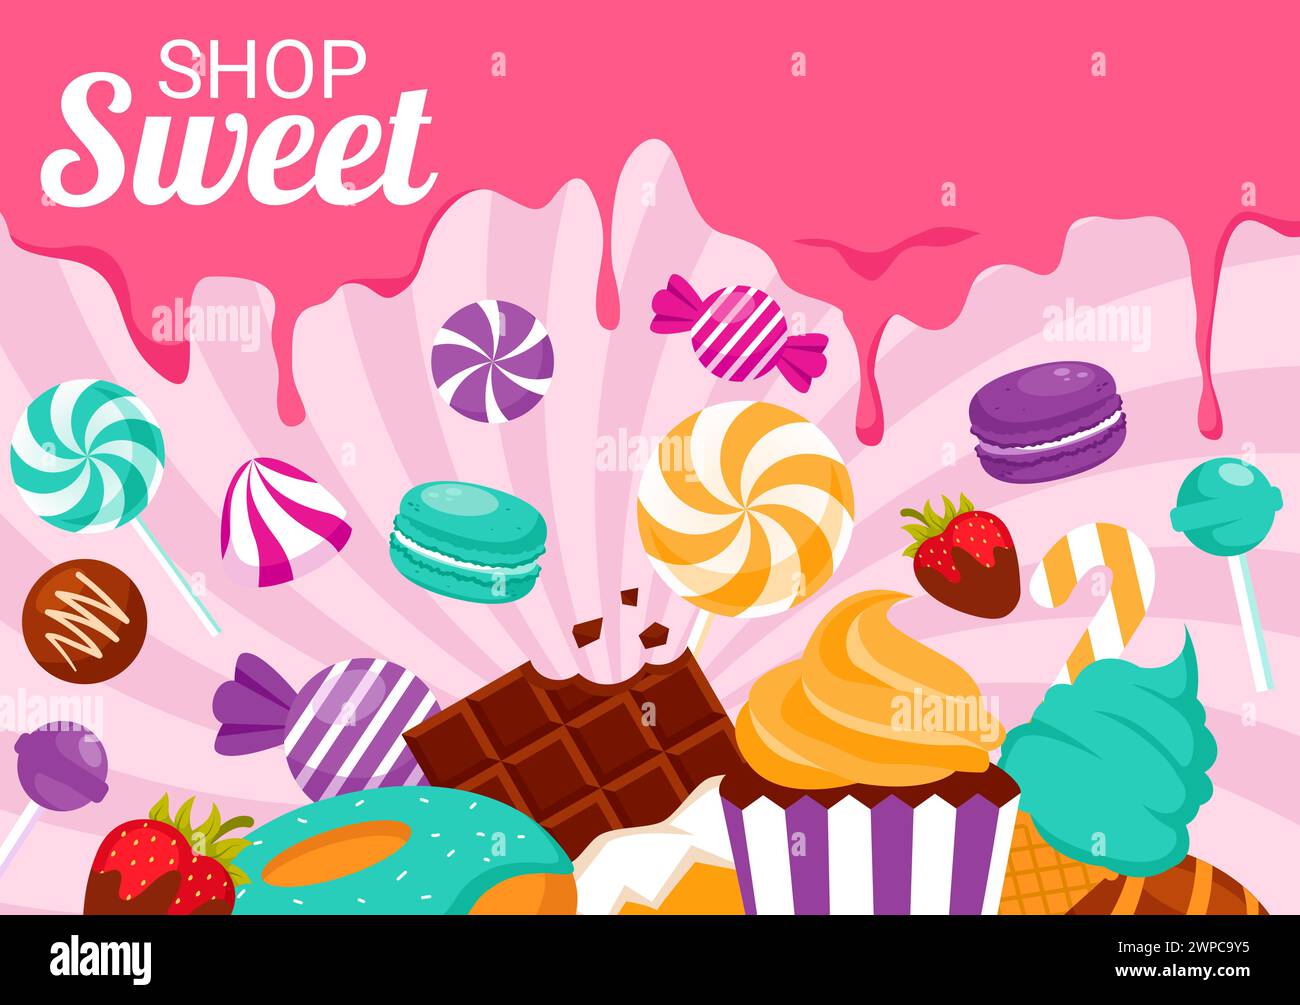 Illustrazione di un vettore del negozio di dolciumi con la vendita di vari prodotti da forno, torte, torte, pasticceria o caramelle in un design di sfondo a forma di cartoni animati Illustrazione Vettoriale